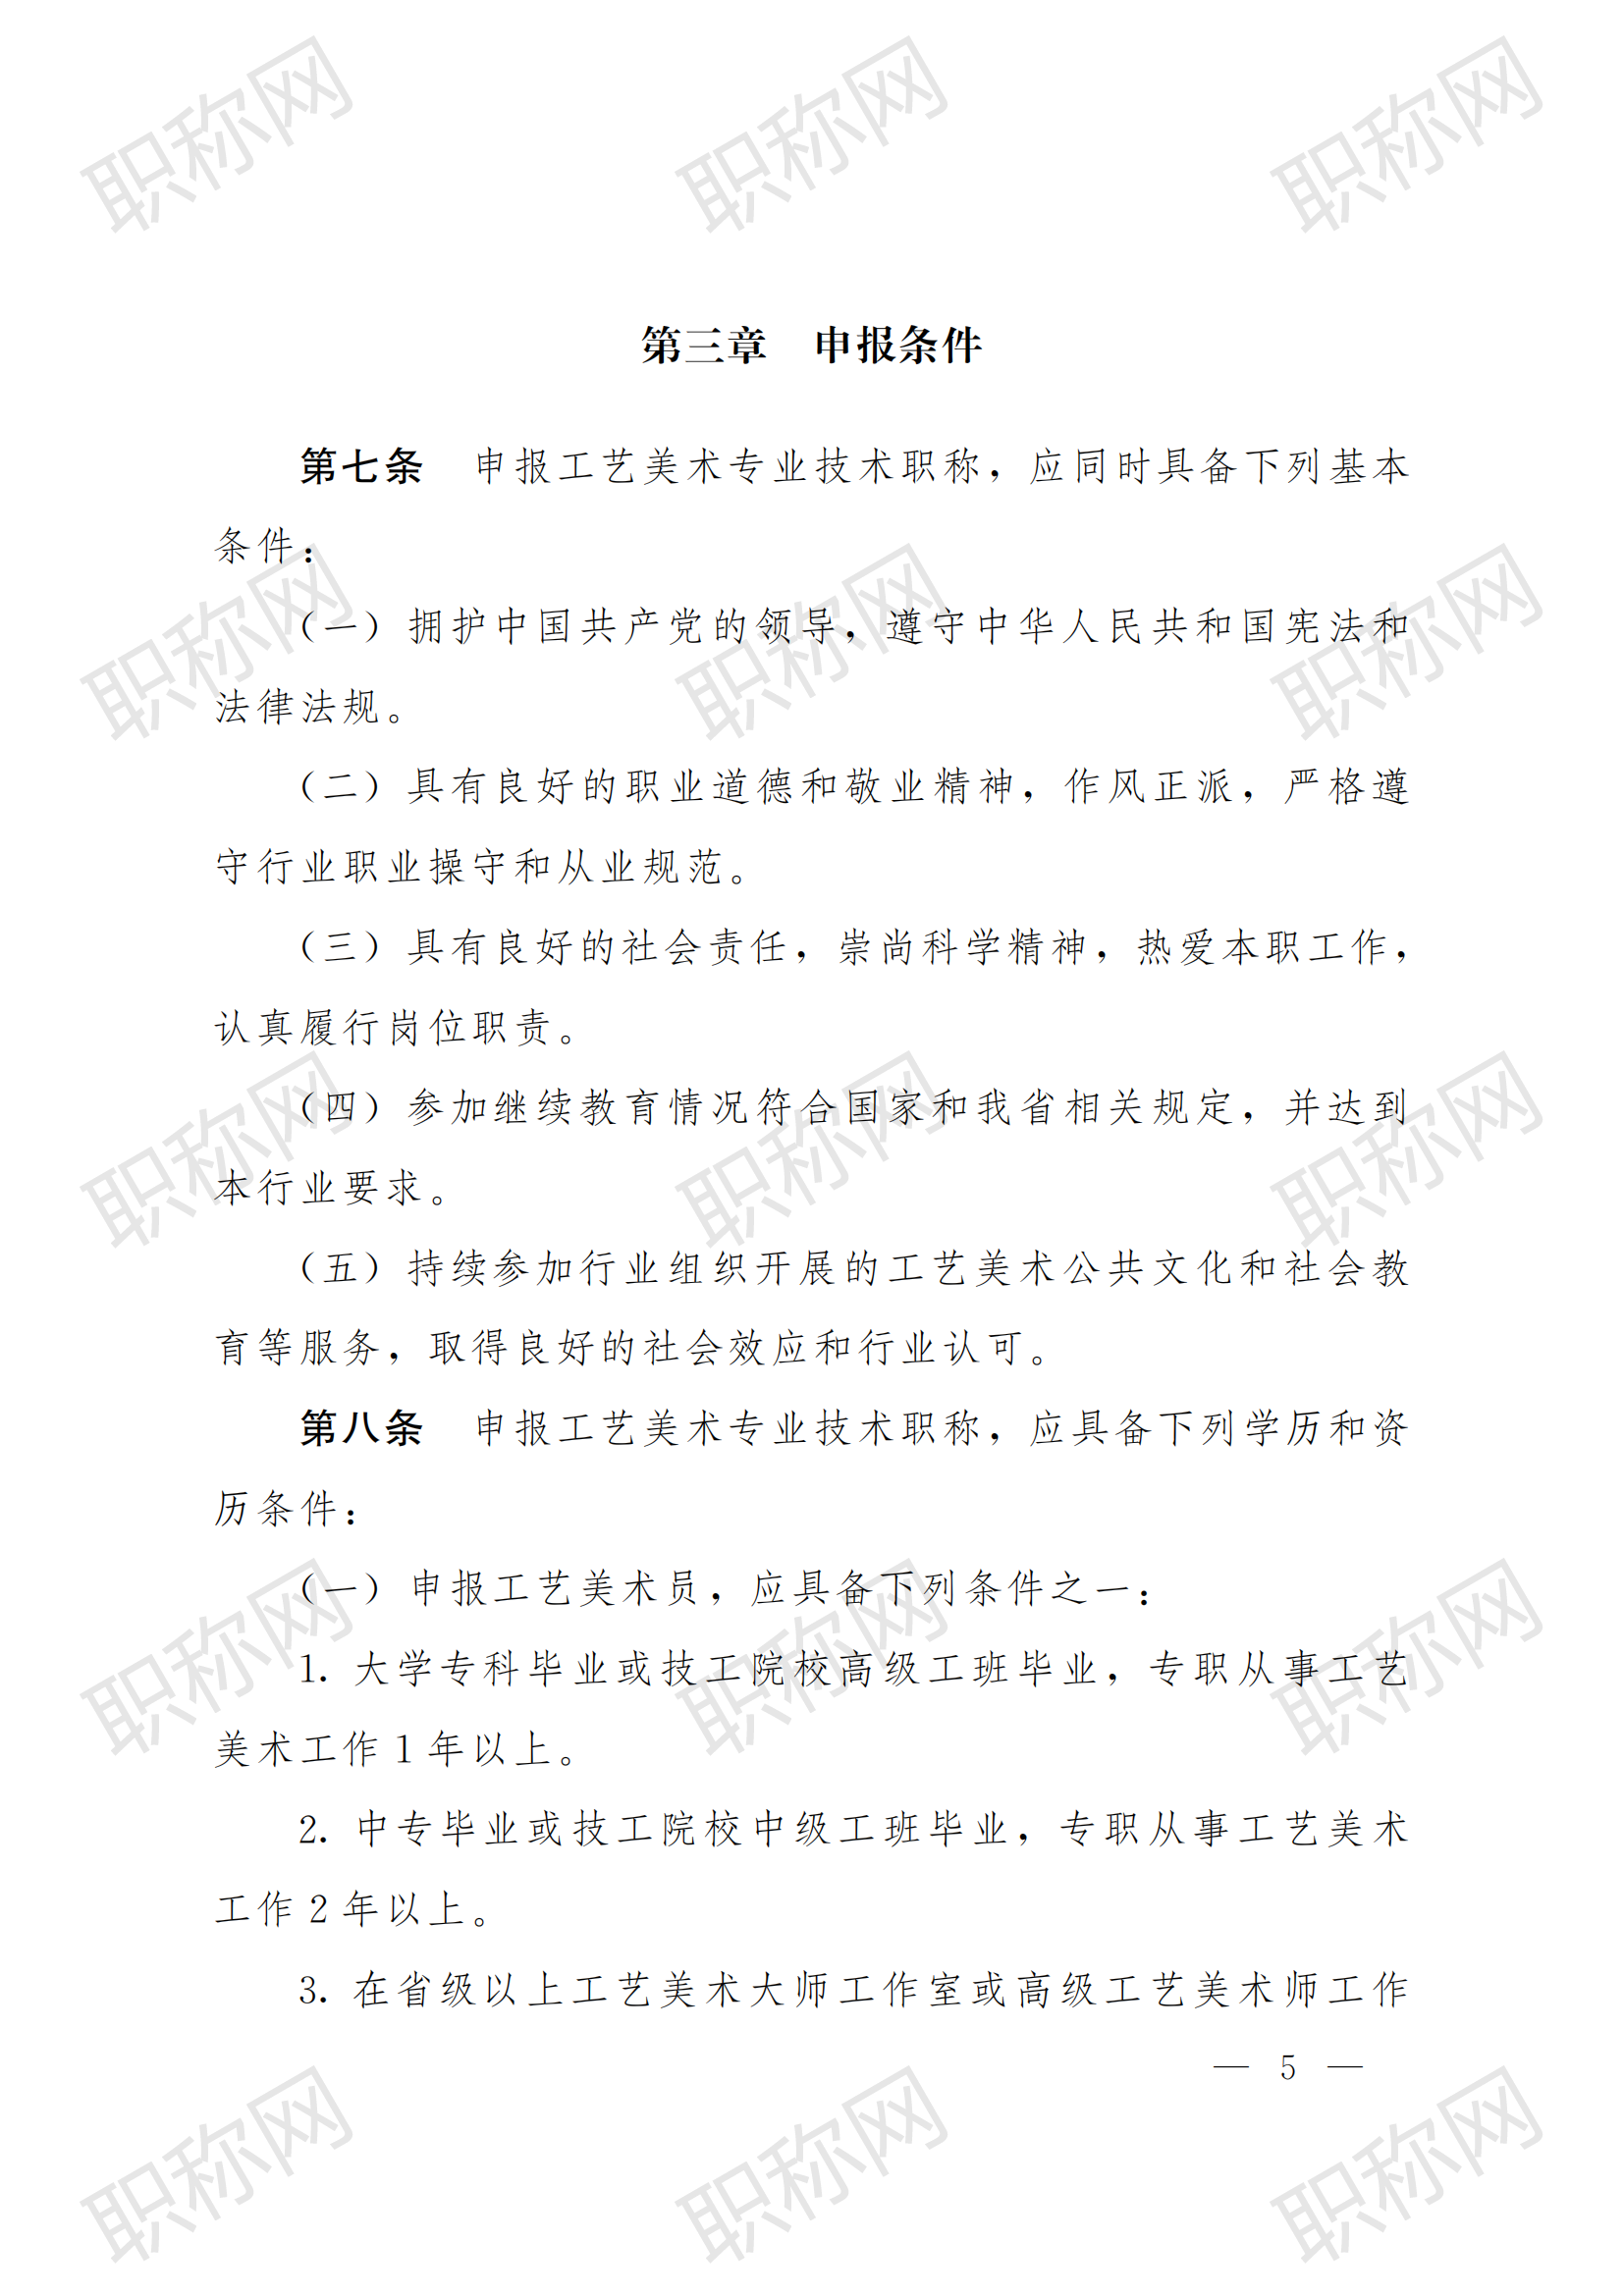 关于印发云南省工艺美术专业人员职称评价标准条件 (试行)  的通知_04.png